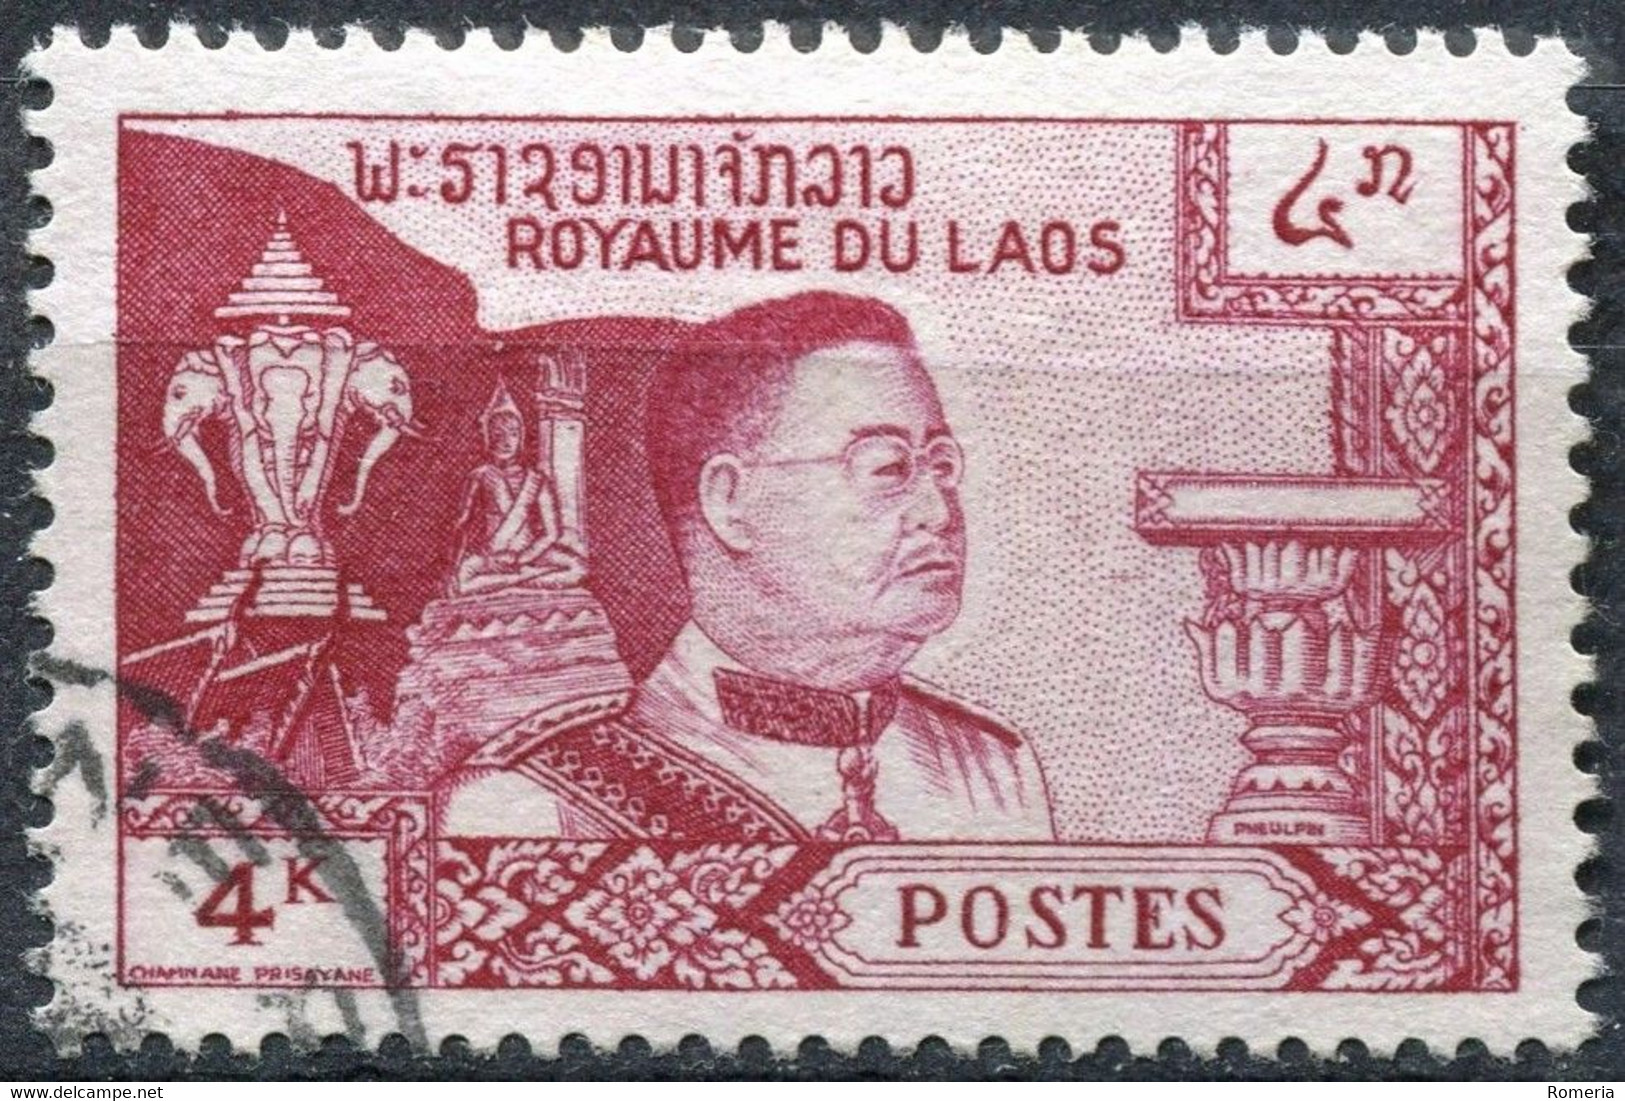 Laos - 1951 - > 1959 - Lots timbres oblitérés et taxe - Nºs dans description